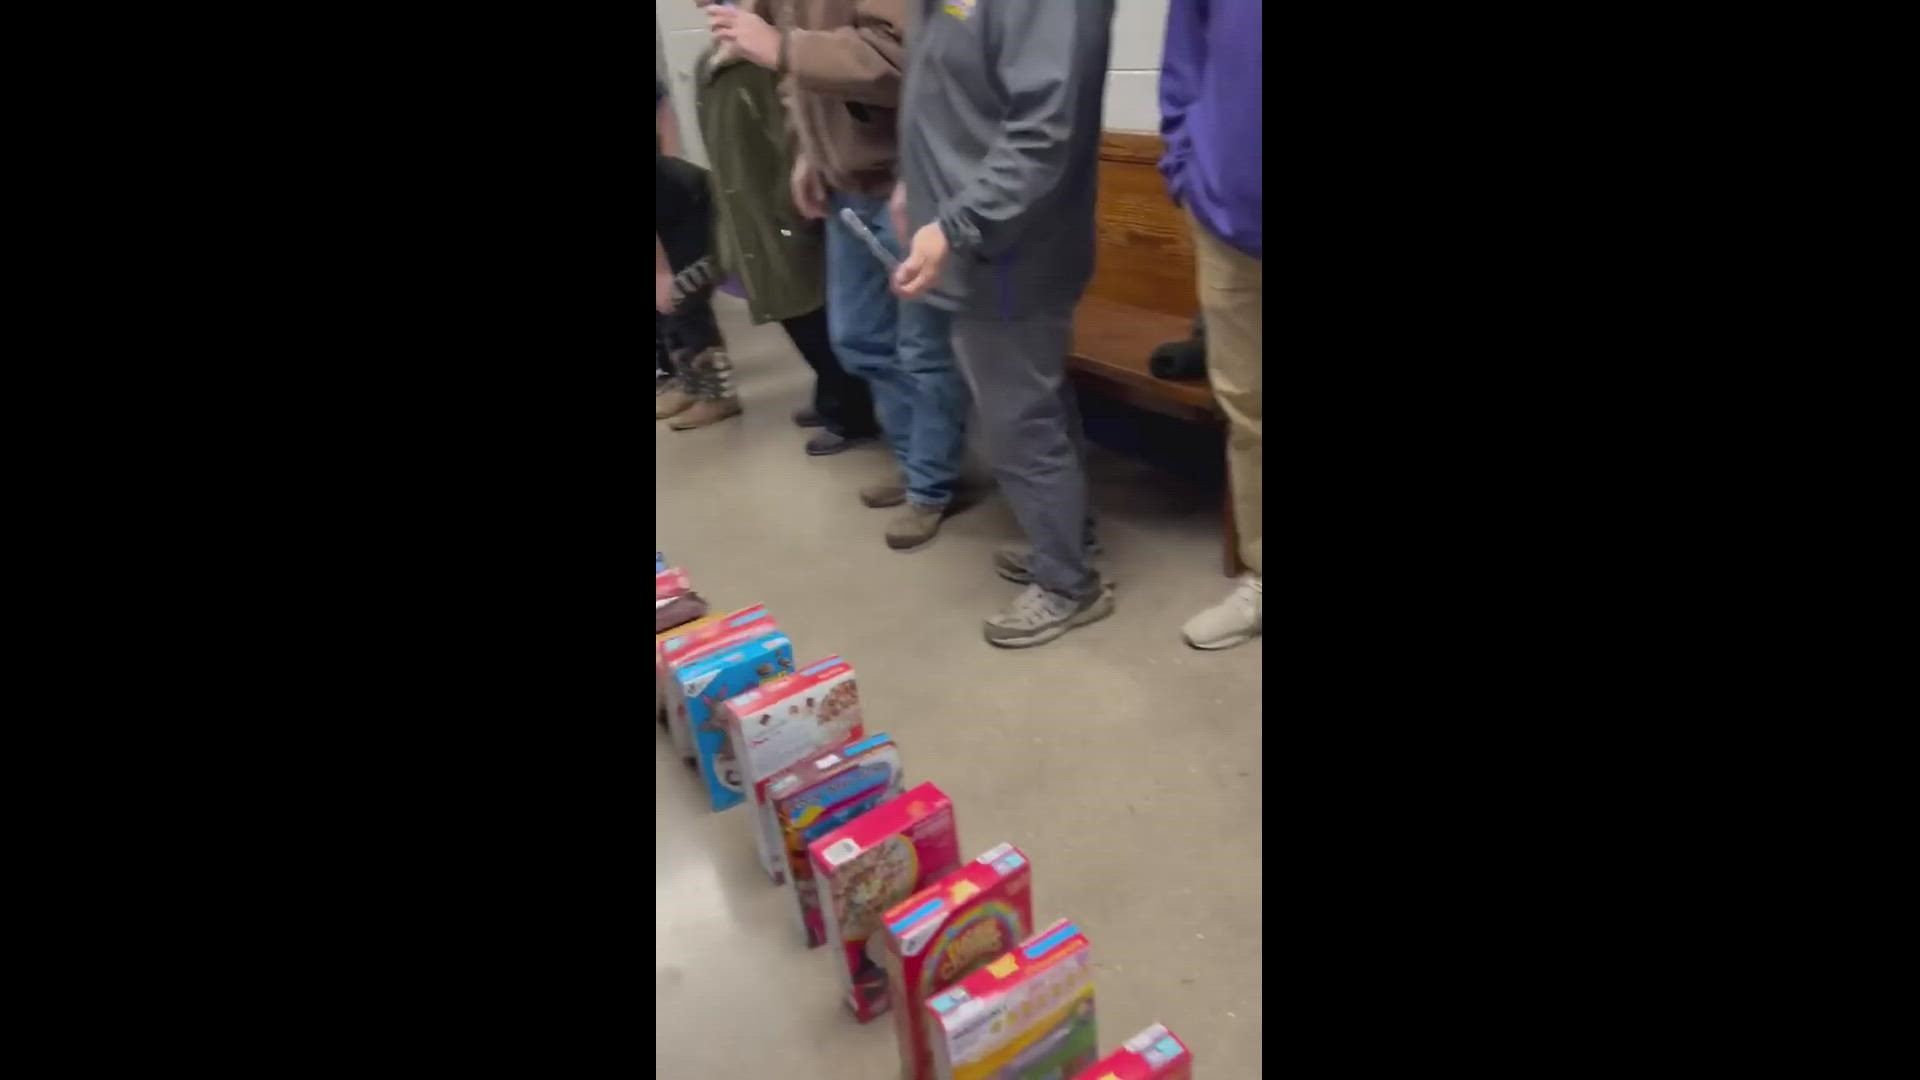 Scranton Elementary School cereal drive has community feeling 'cheerio'